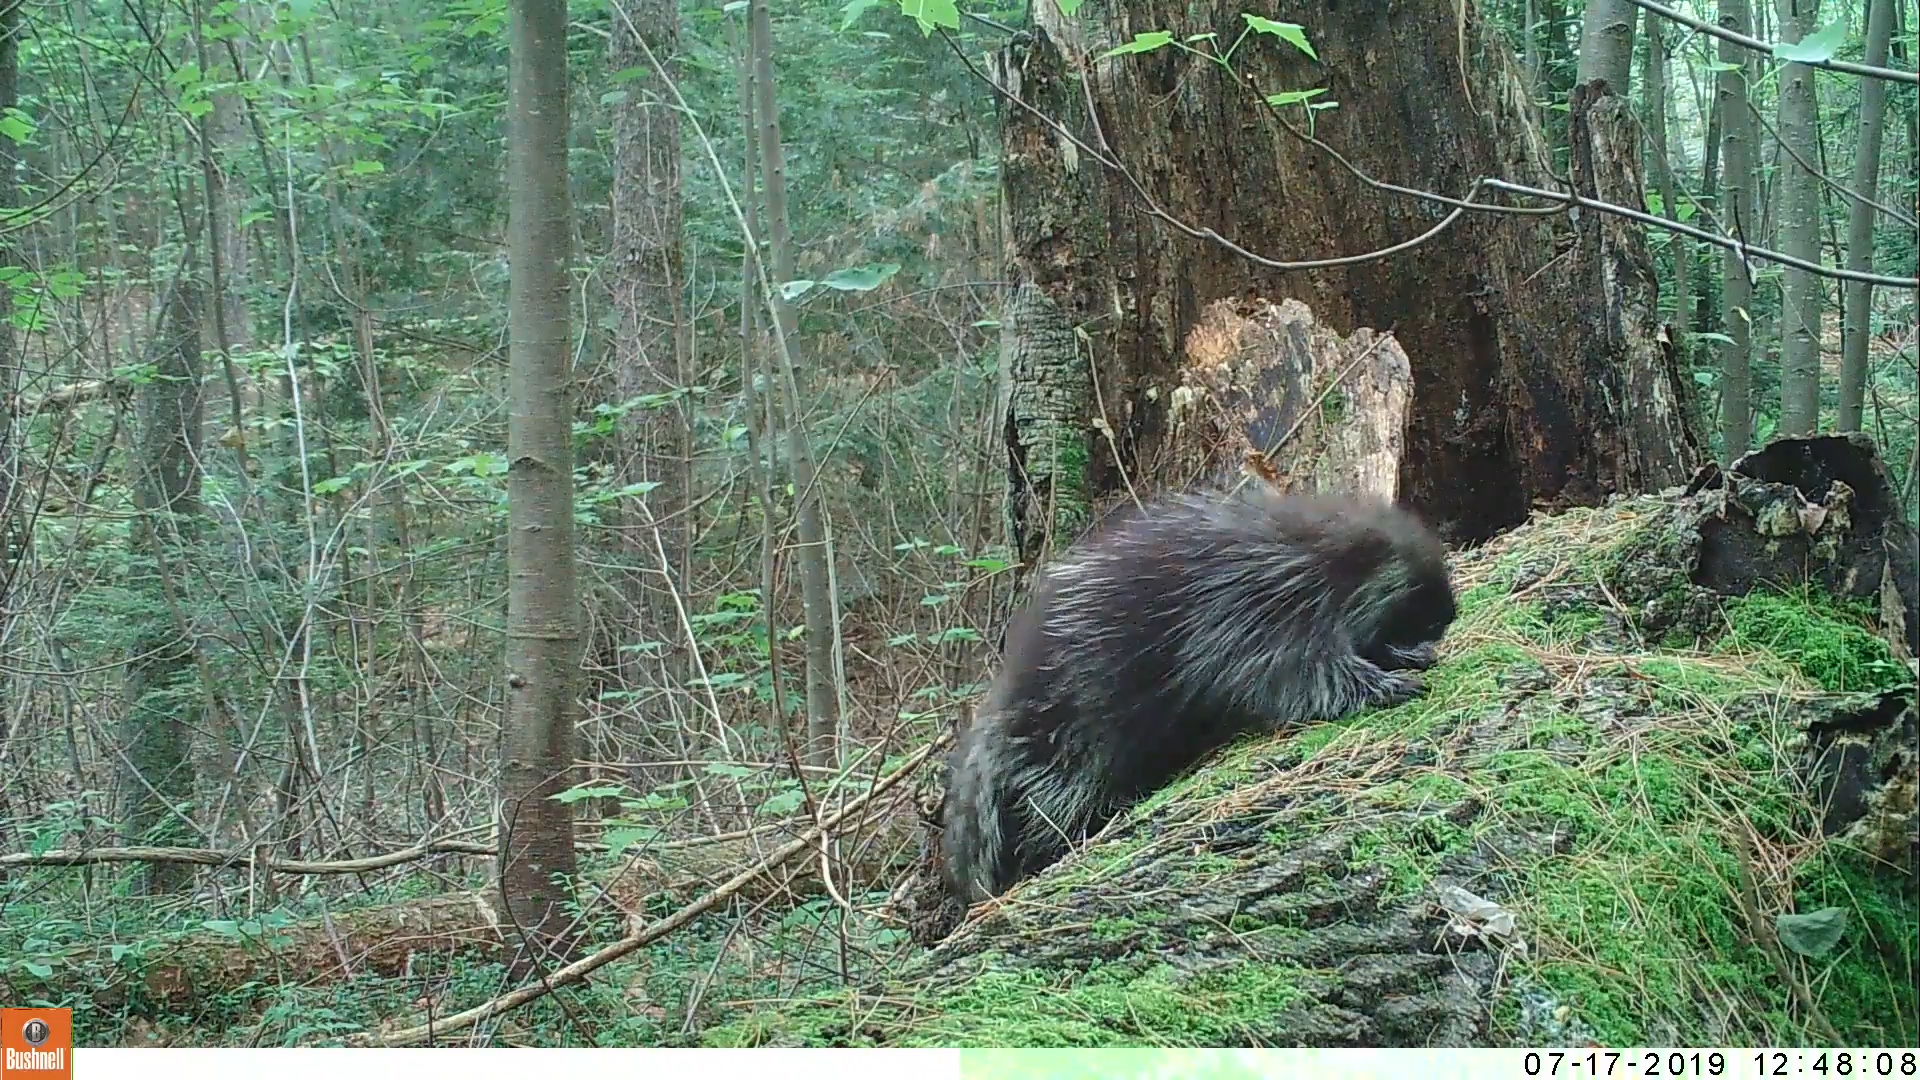 porcupine on log in massachusetts